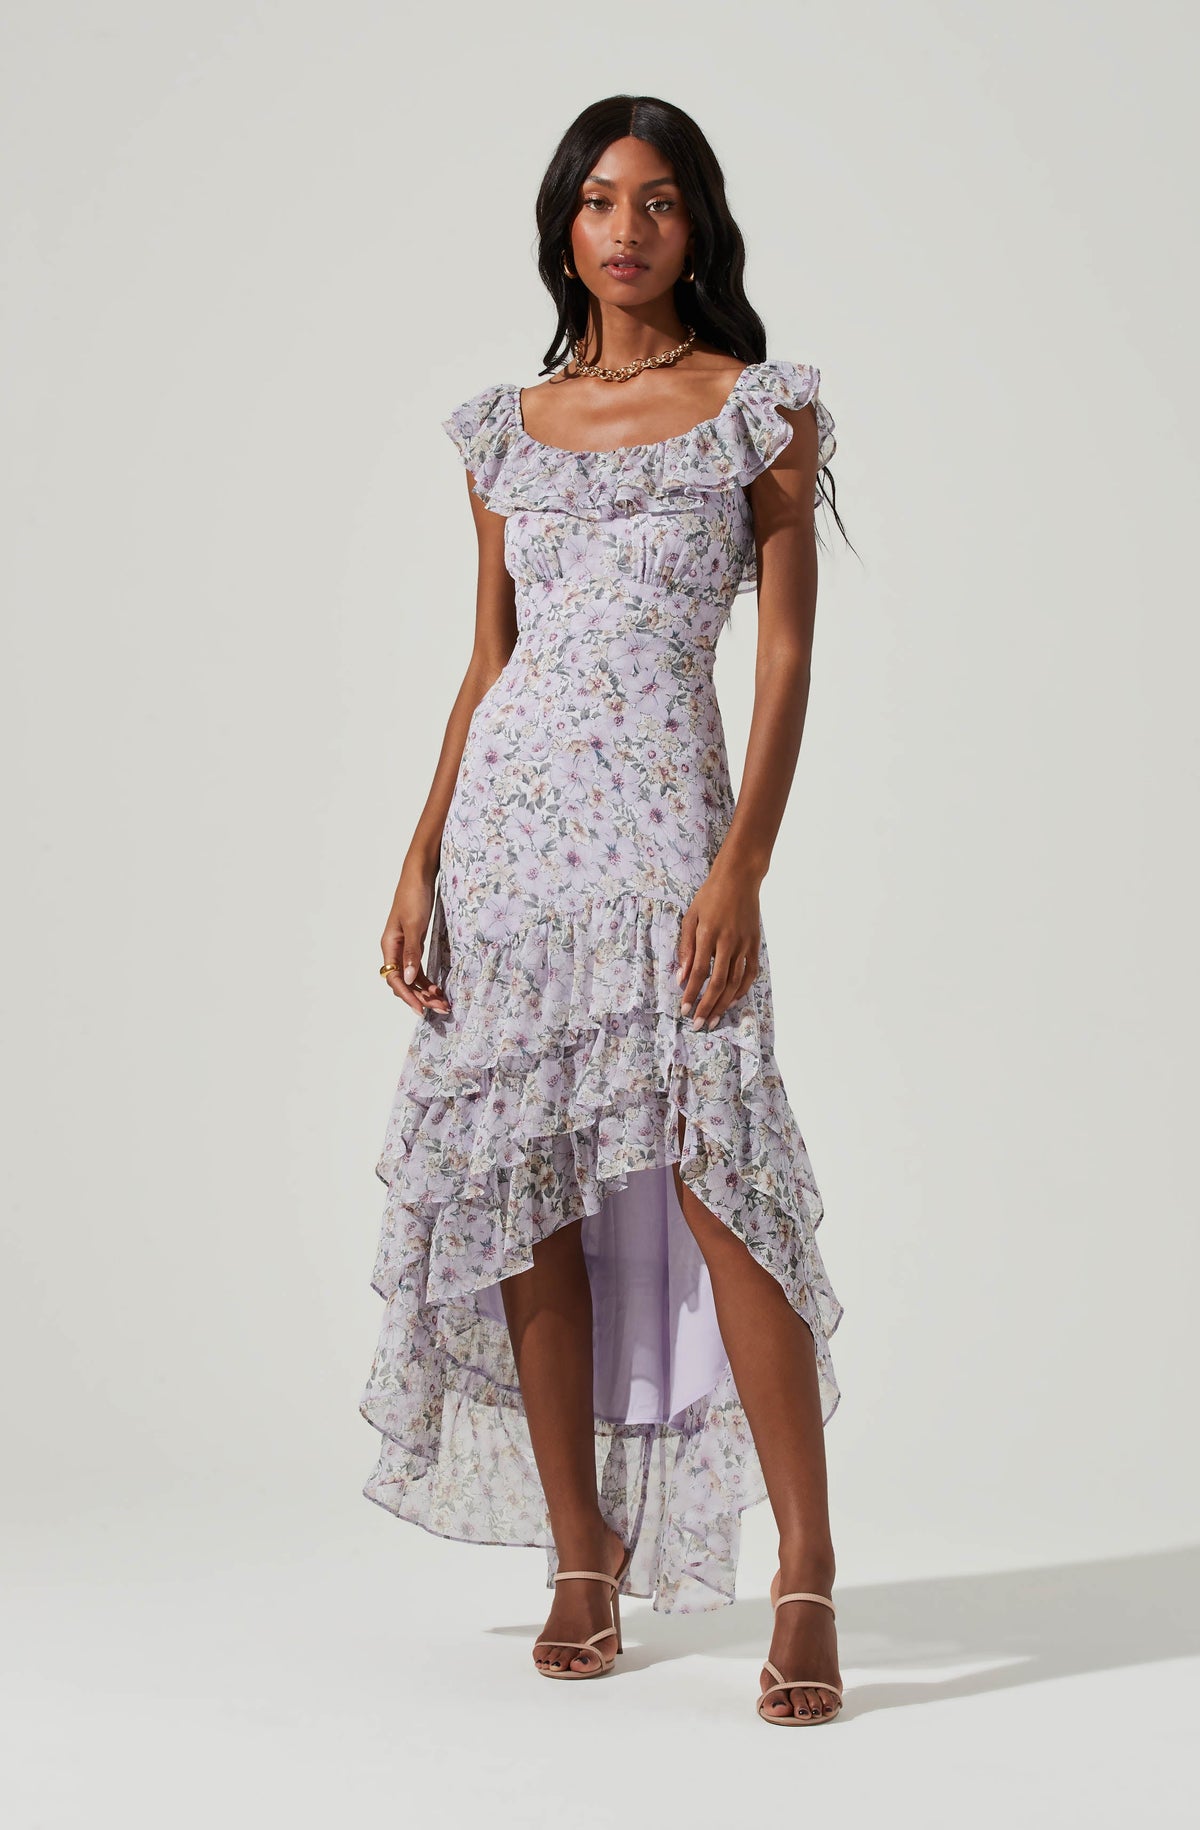 V Neck Lilac High Low Tulle Prom Dresses Formal Evening Dresses PSK155